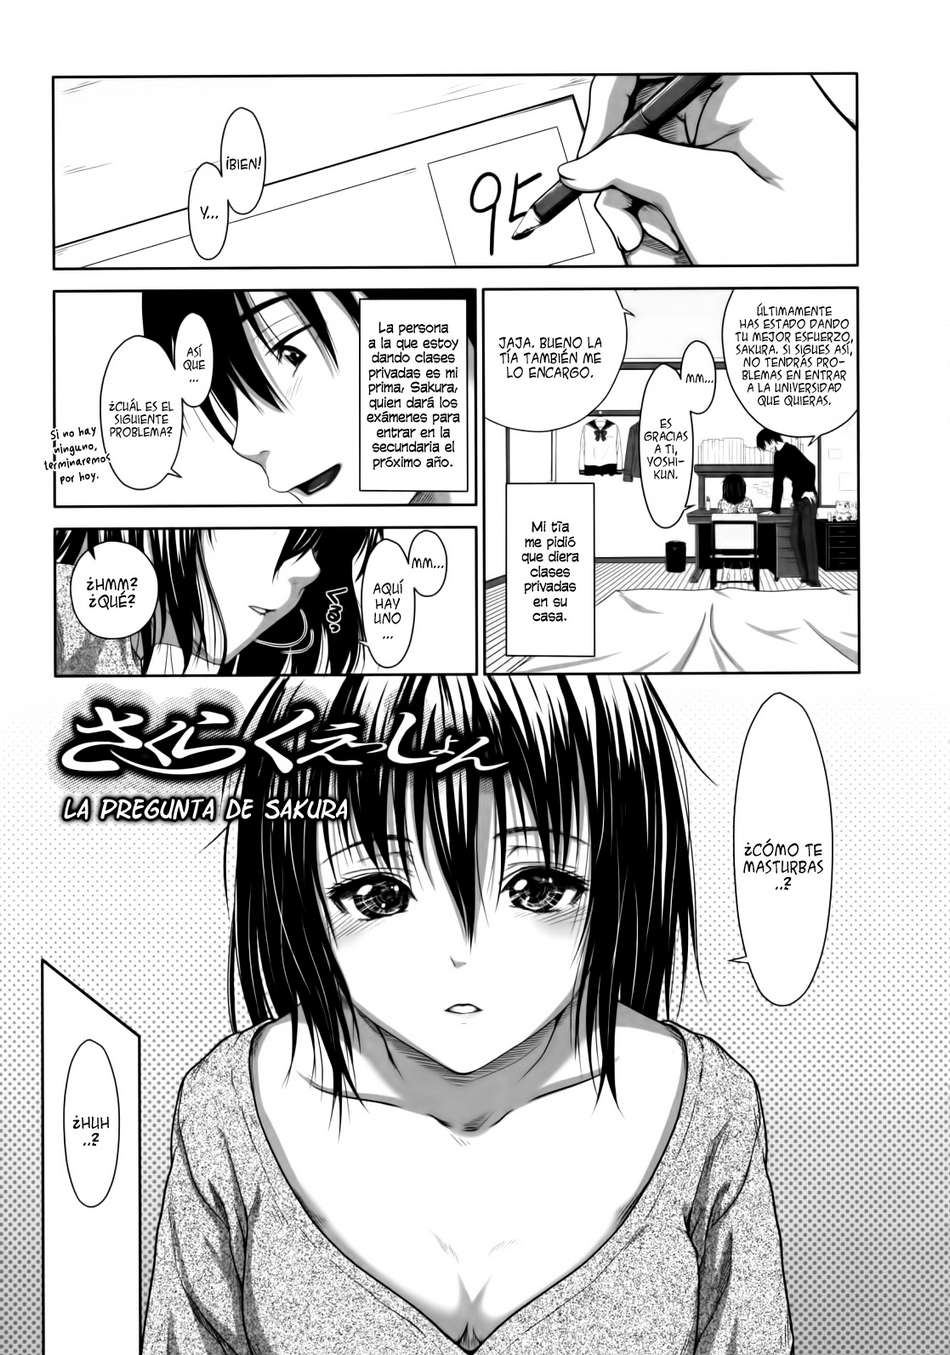 La pregunta de Sakura - Page #1